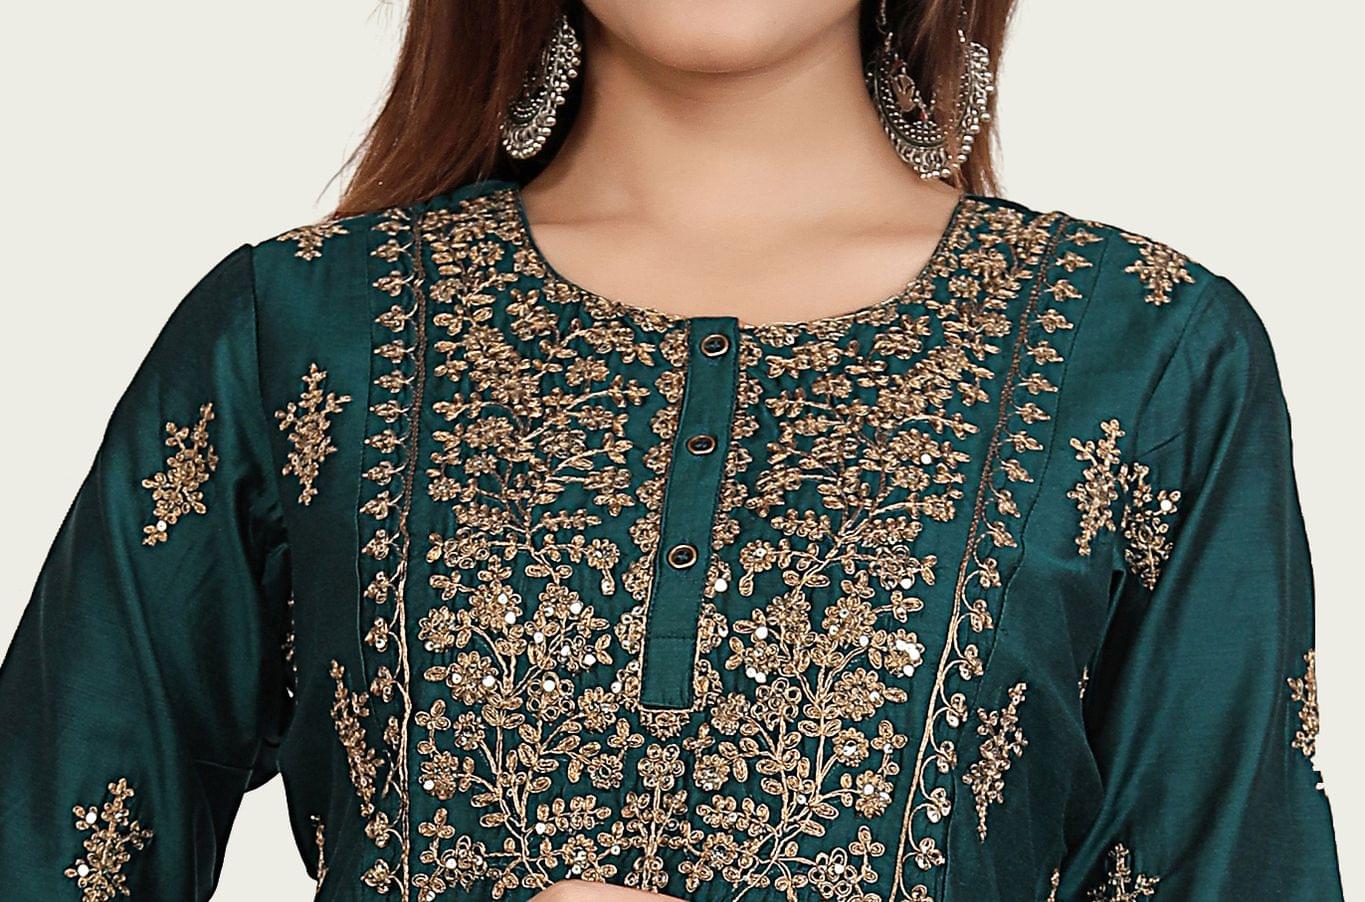 Aatiya Dark Green Chanderi Cotton Suit Set